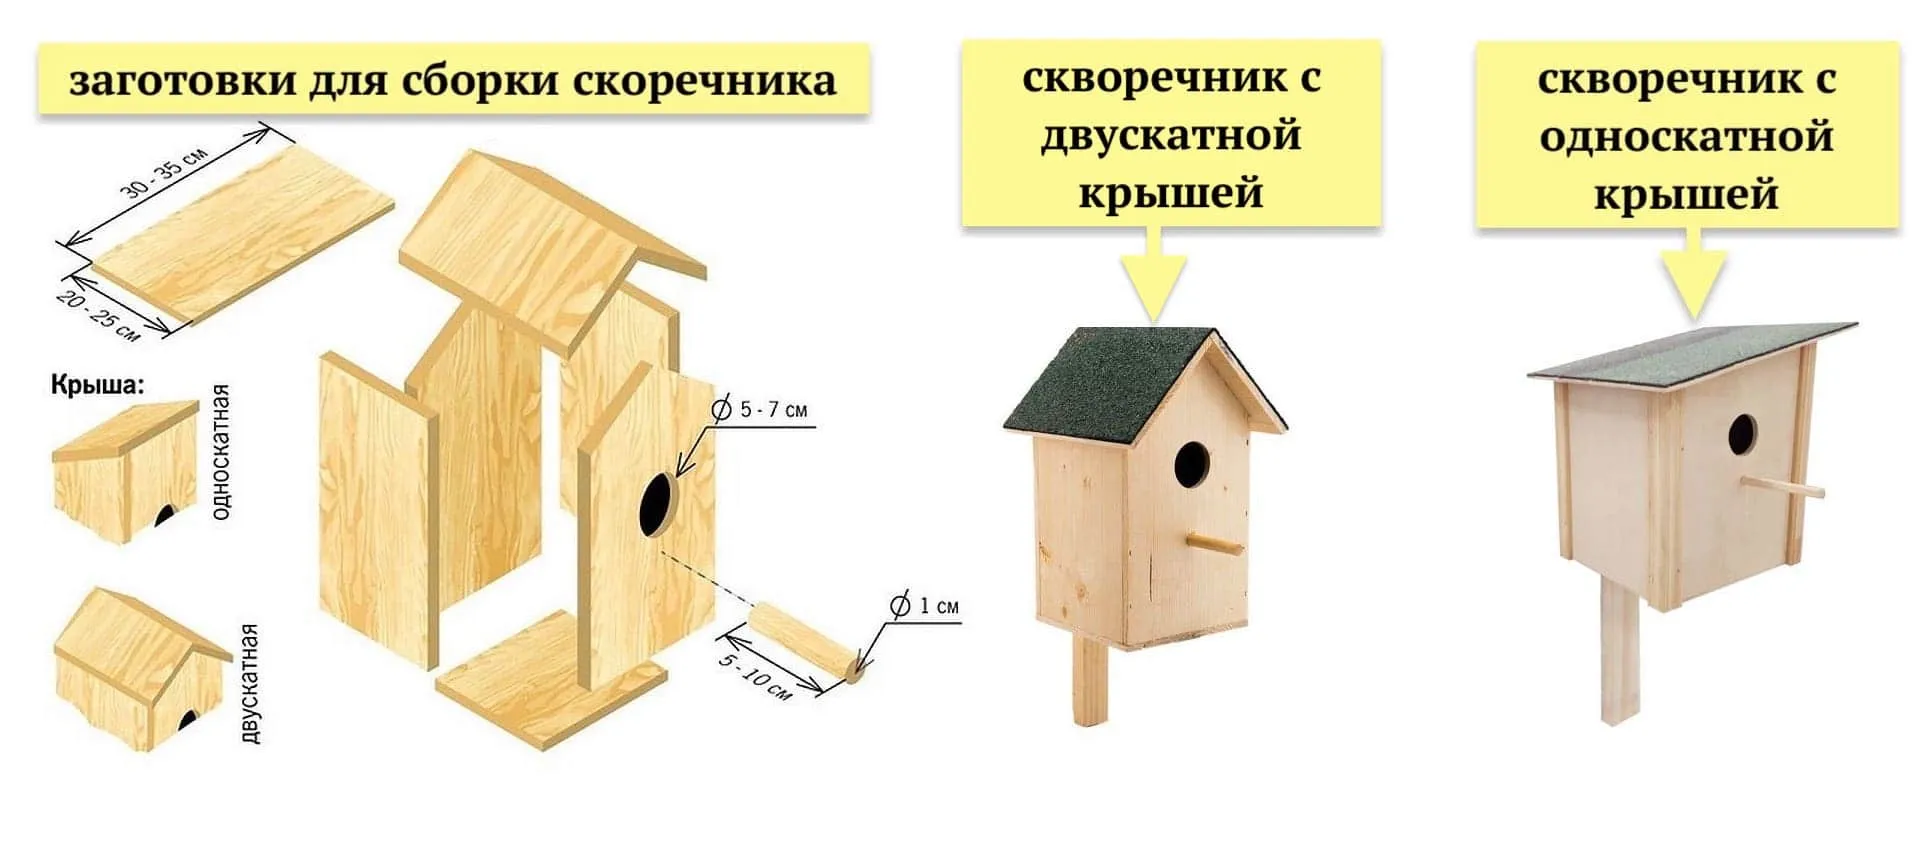 Схема сборки скворечника с односкатной и двускатной крышей